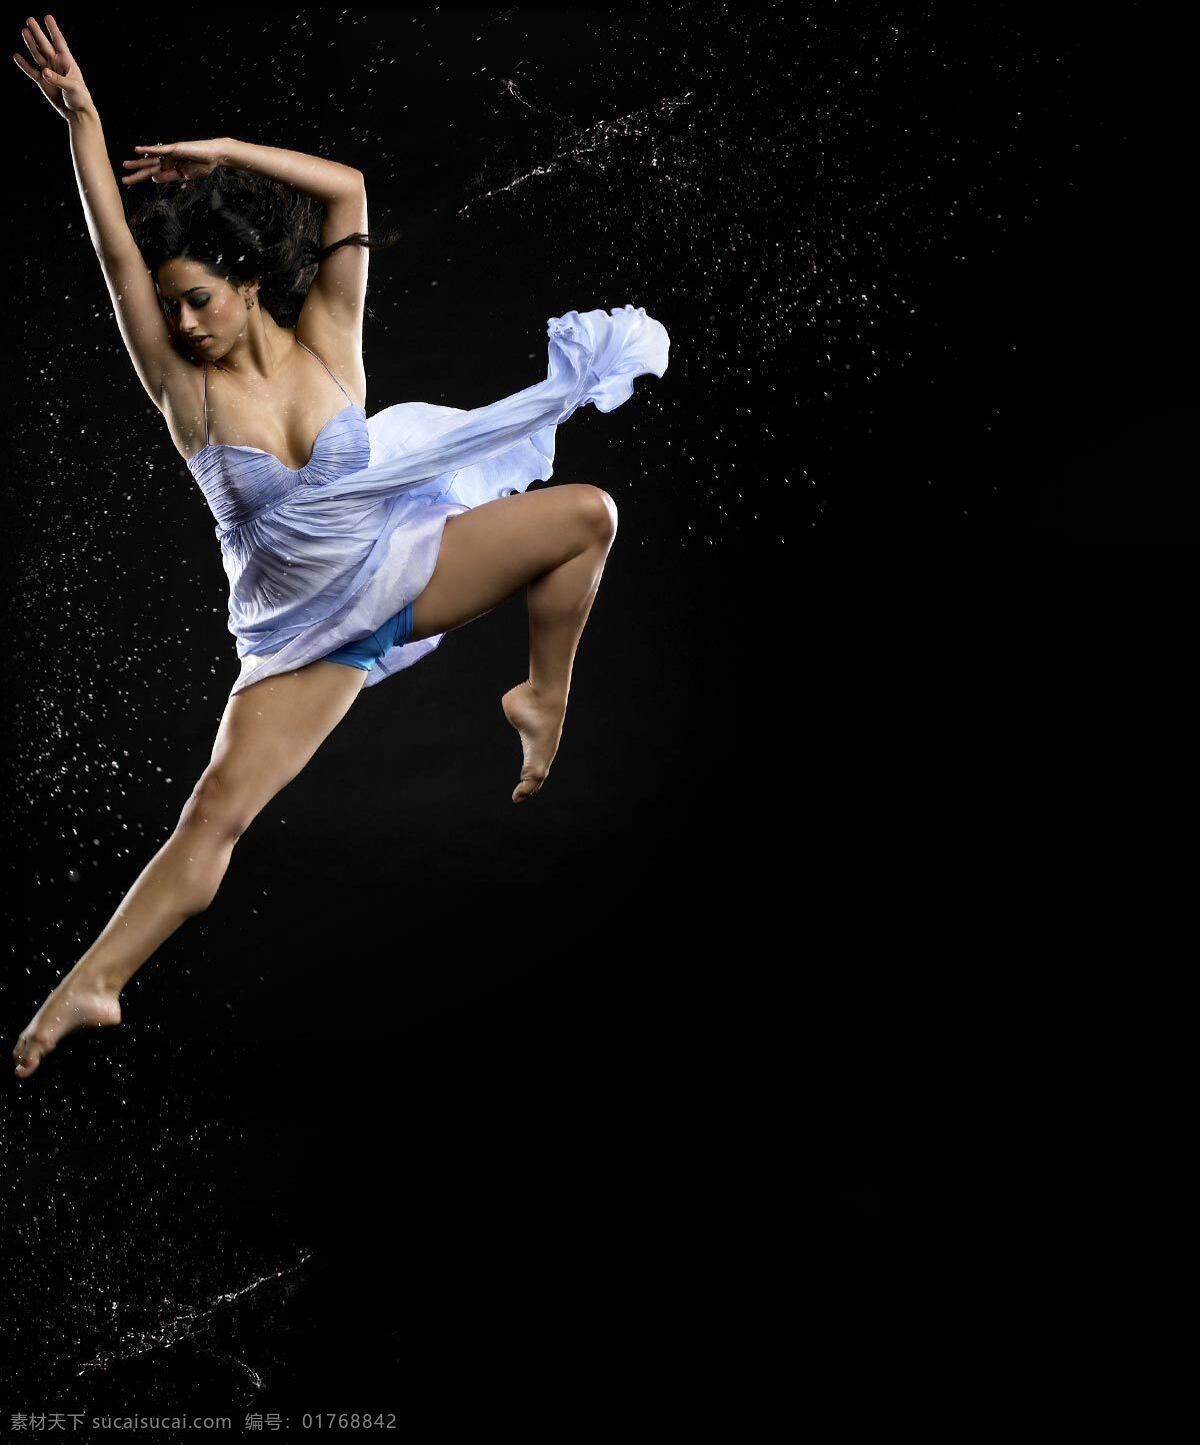 芭蕾 光影 女性 室内 跳跃 文化艺术 舞蹈 舞蹈人物 舞者 舞姿 ballet 西方 现代 leap 舞蹈音乐 psd源文件